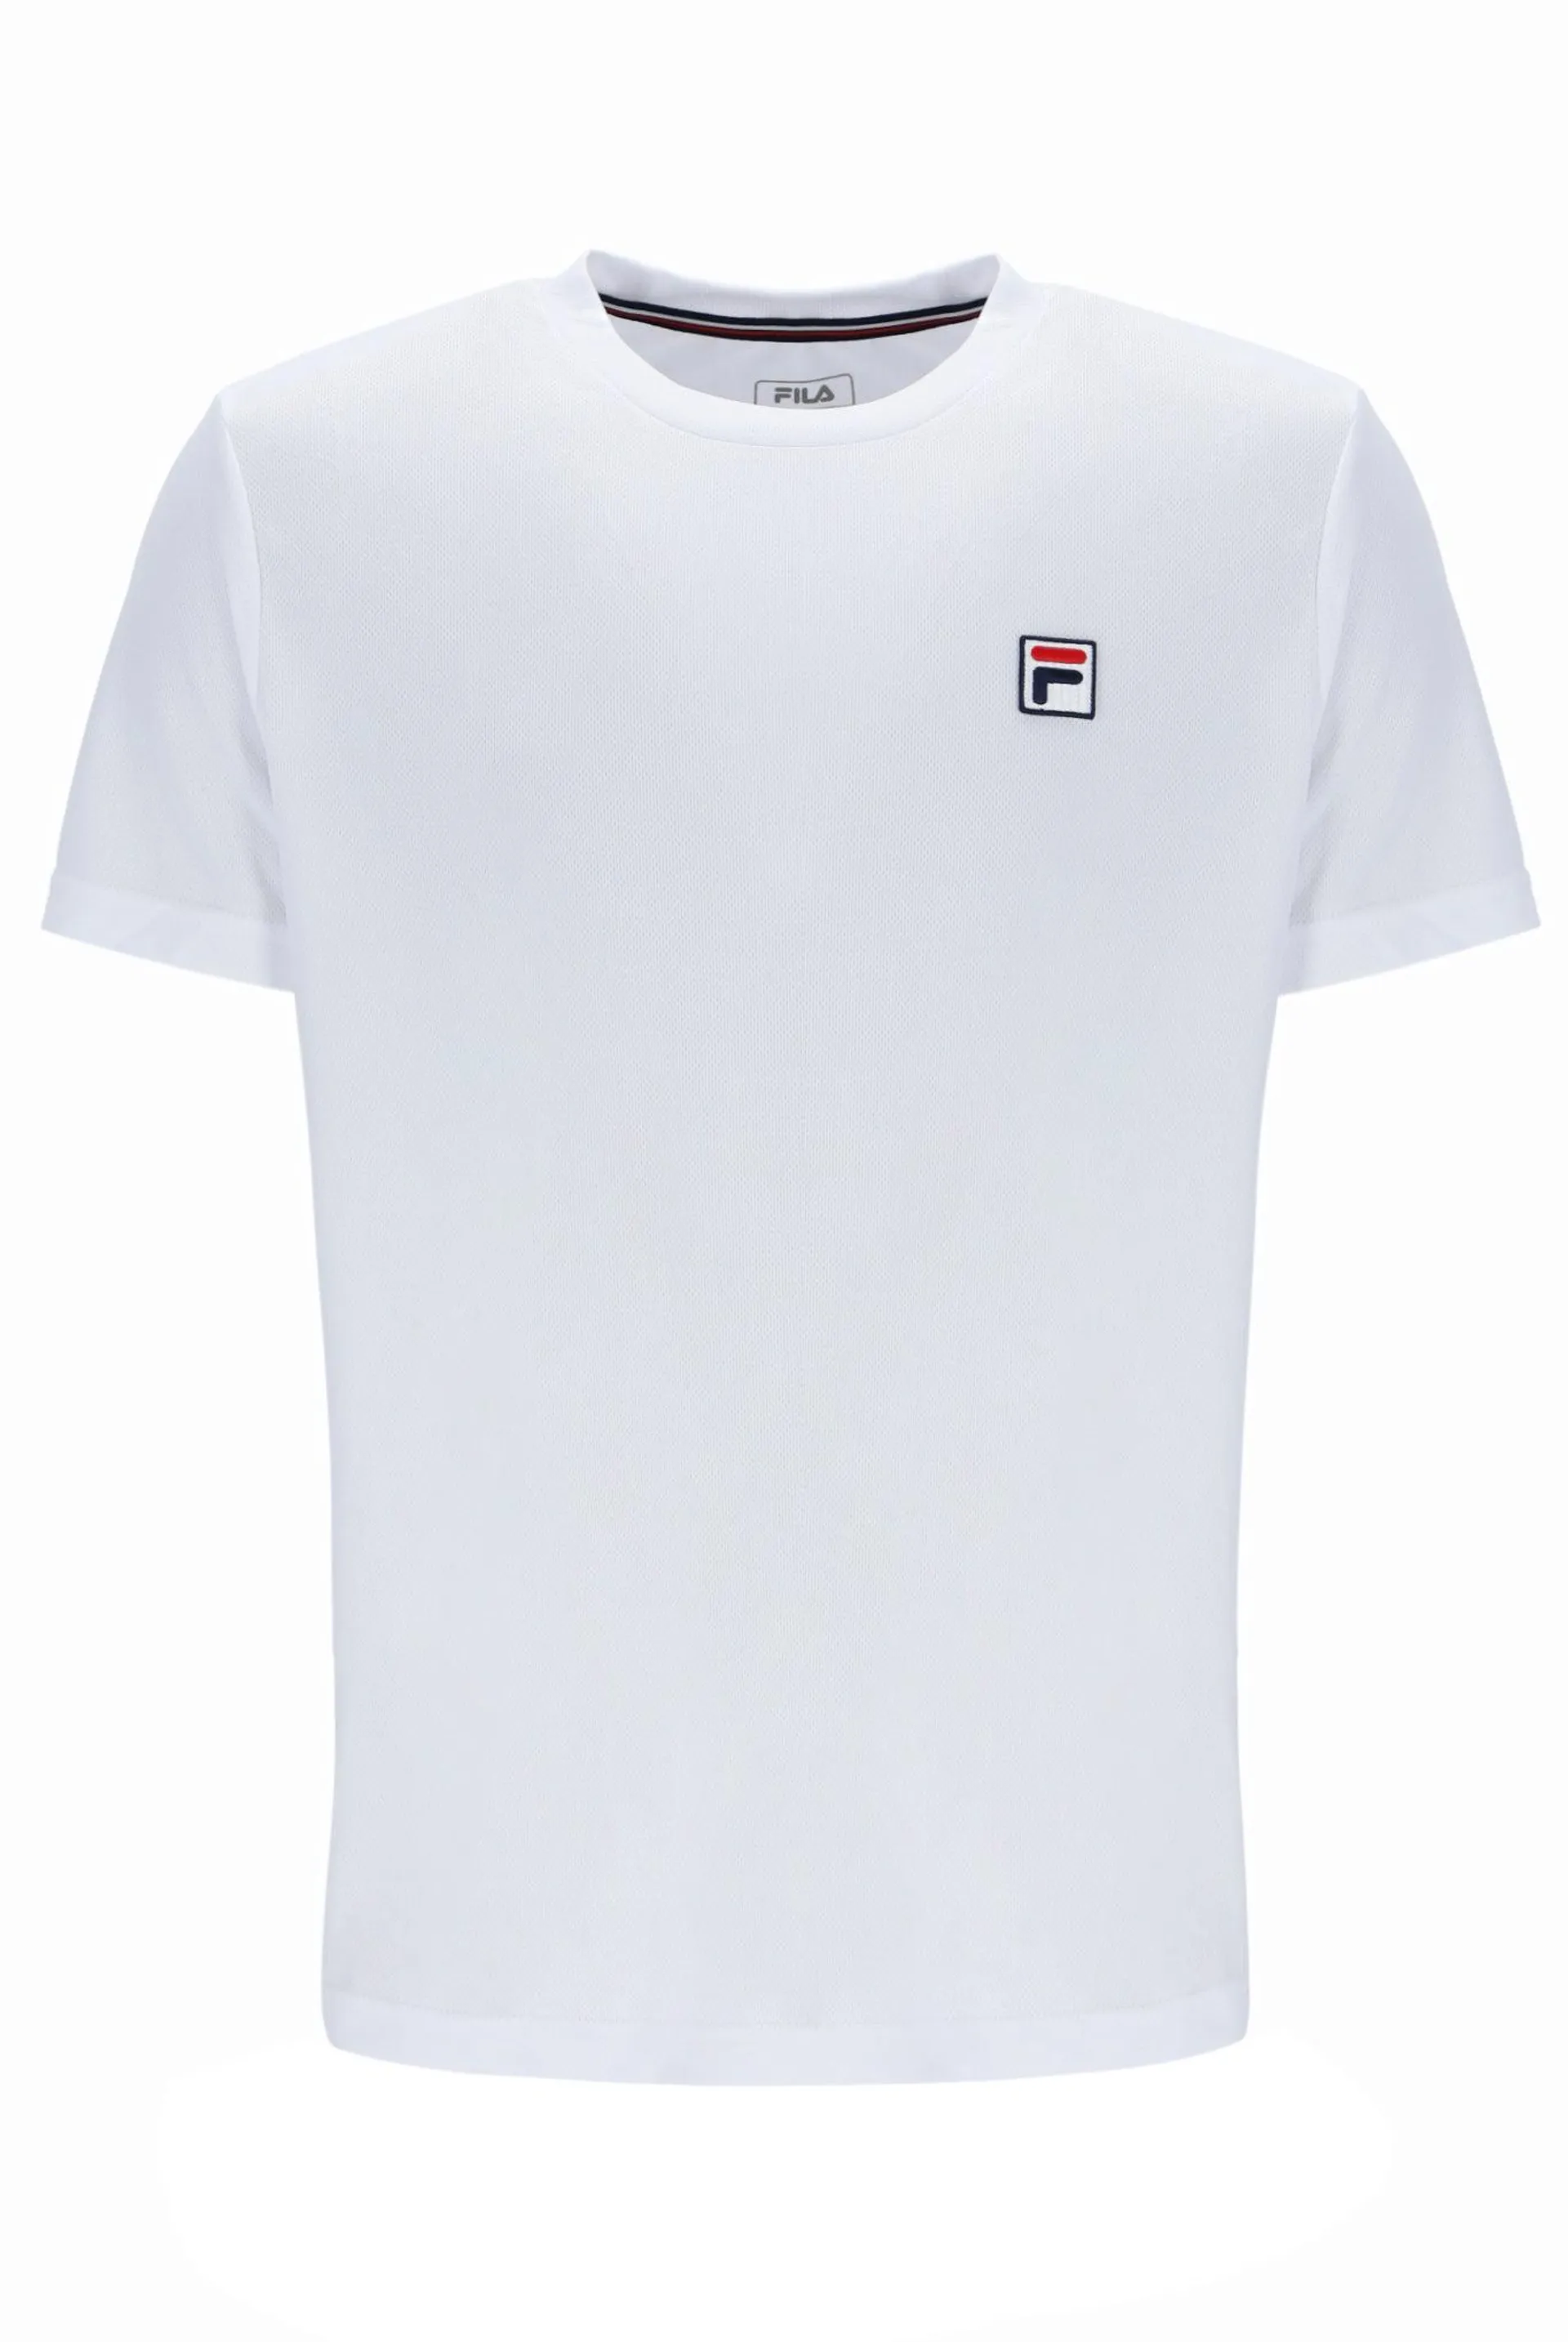 Dani Tennis T-Shirt